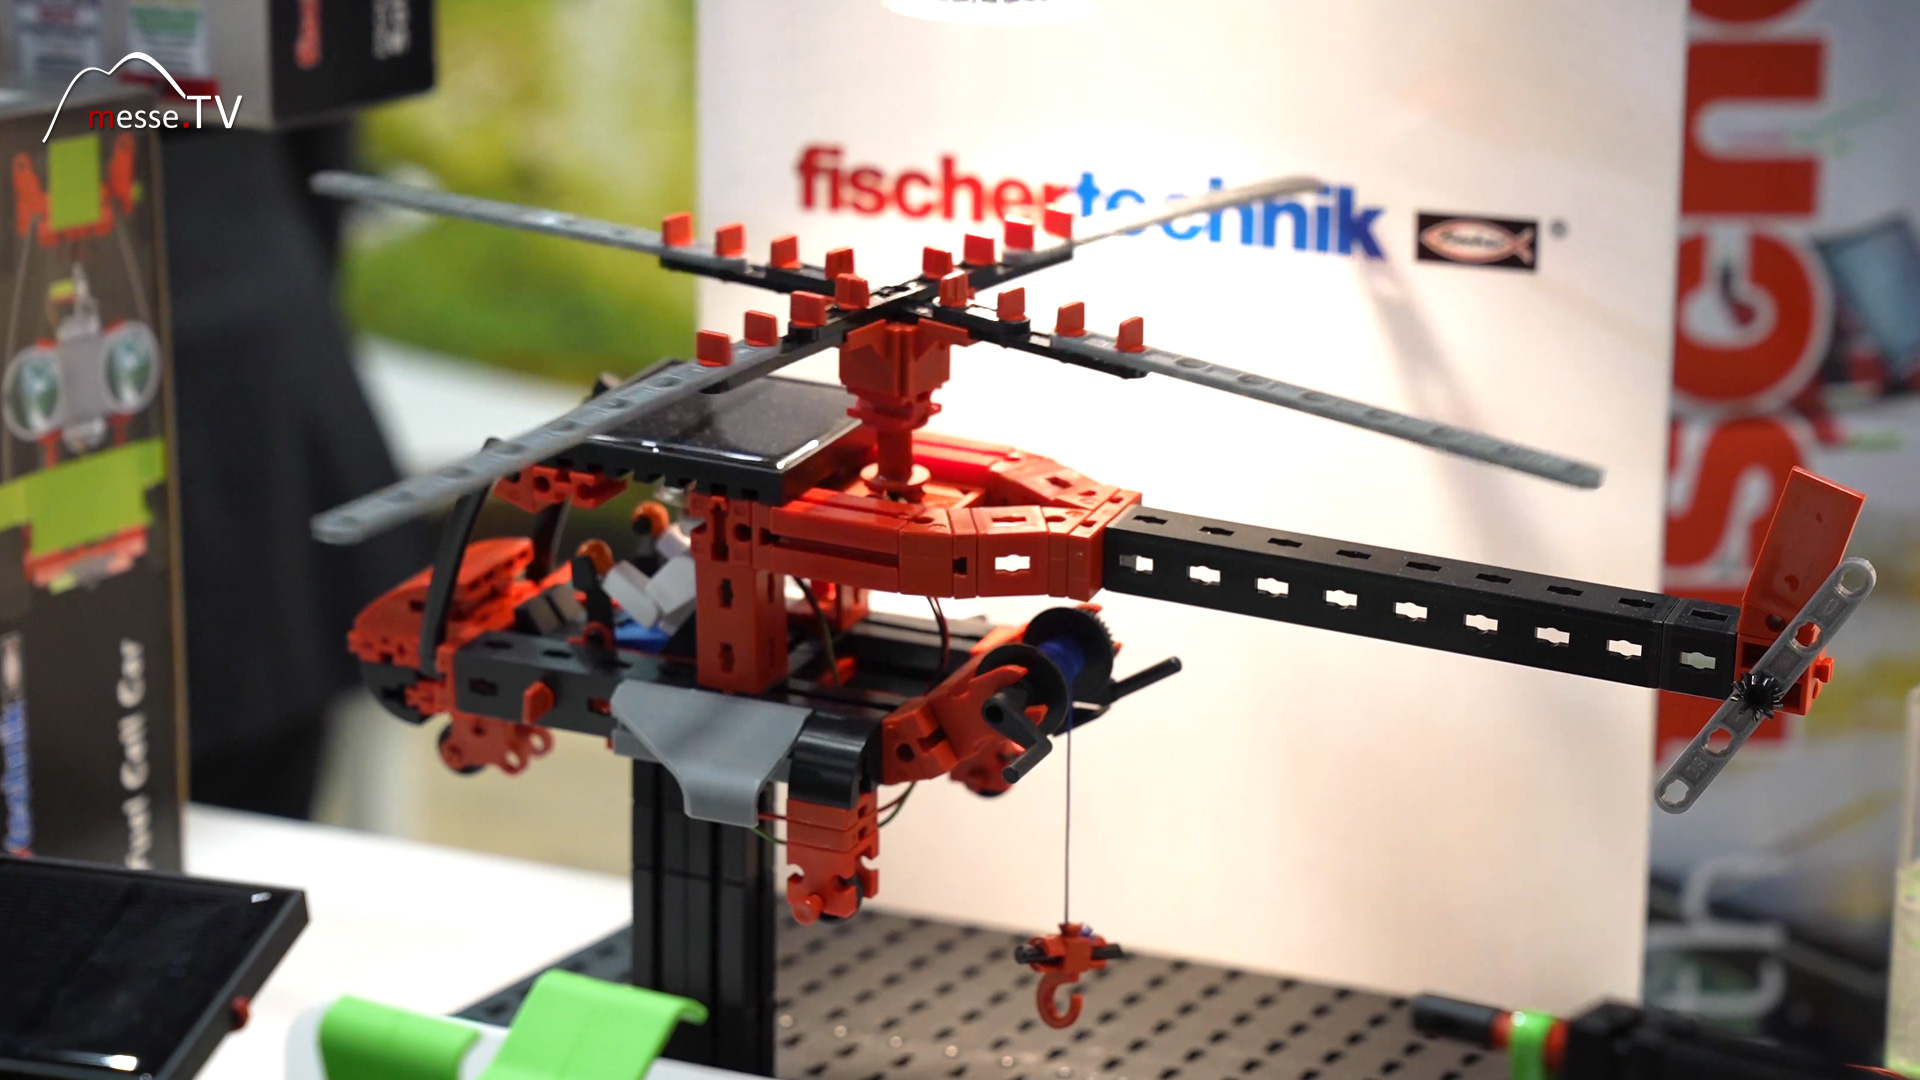 Smart Robots Pro fischertechnik educational construction toys